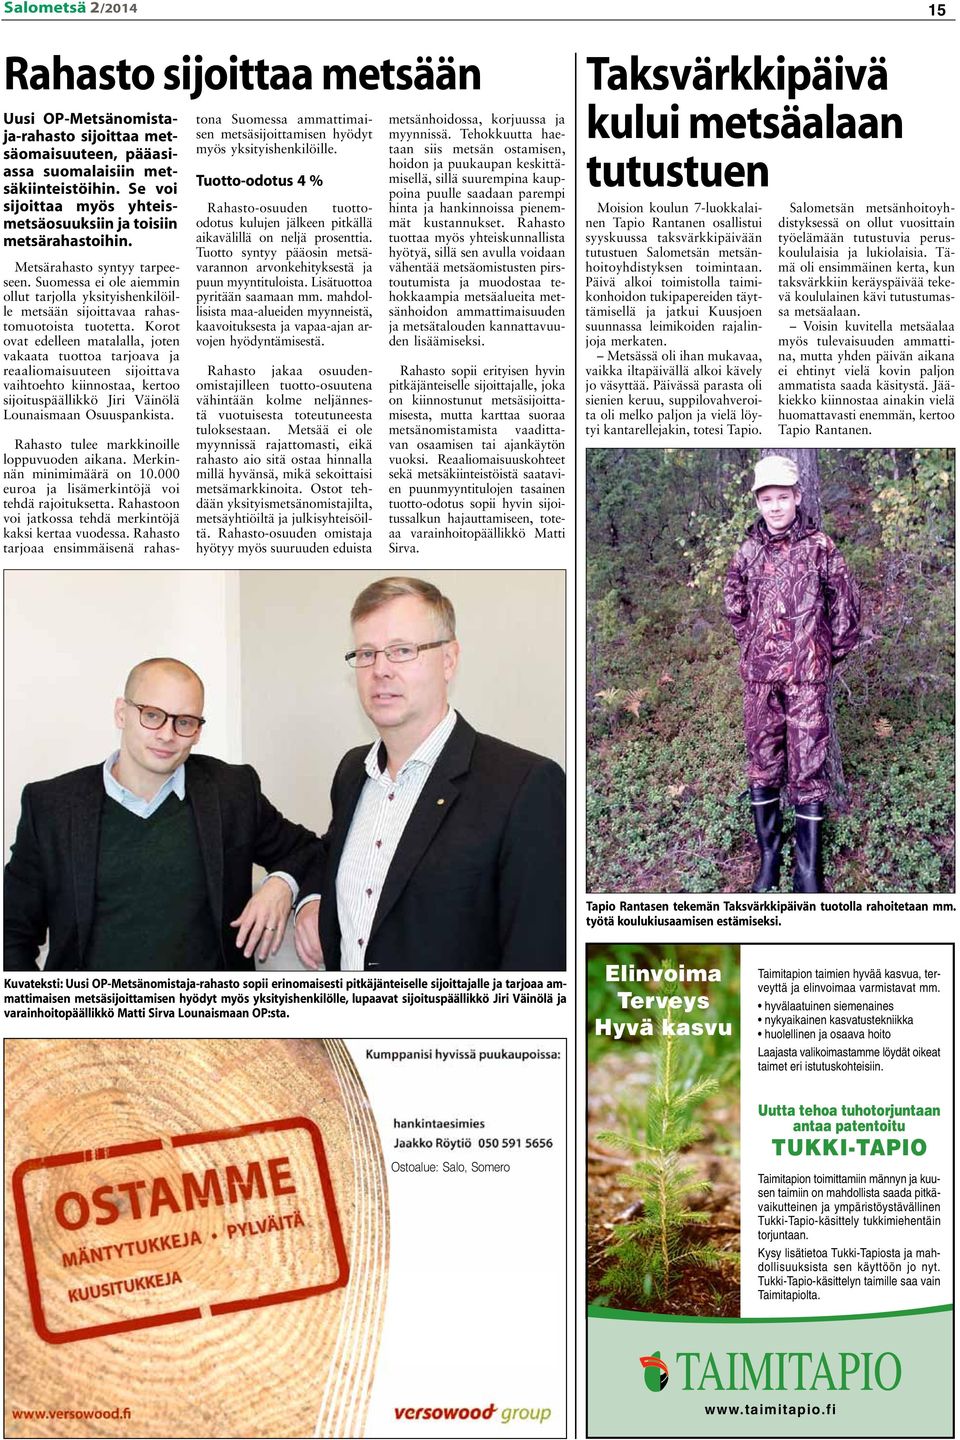 Suomessa ei ole aiemmin ollut tarjolla yksityishenkilöille metsään sijoittavaa rahastomuotoista tuotetta.